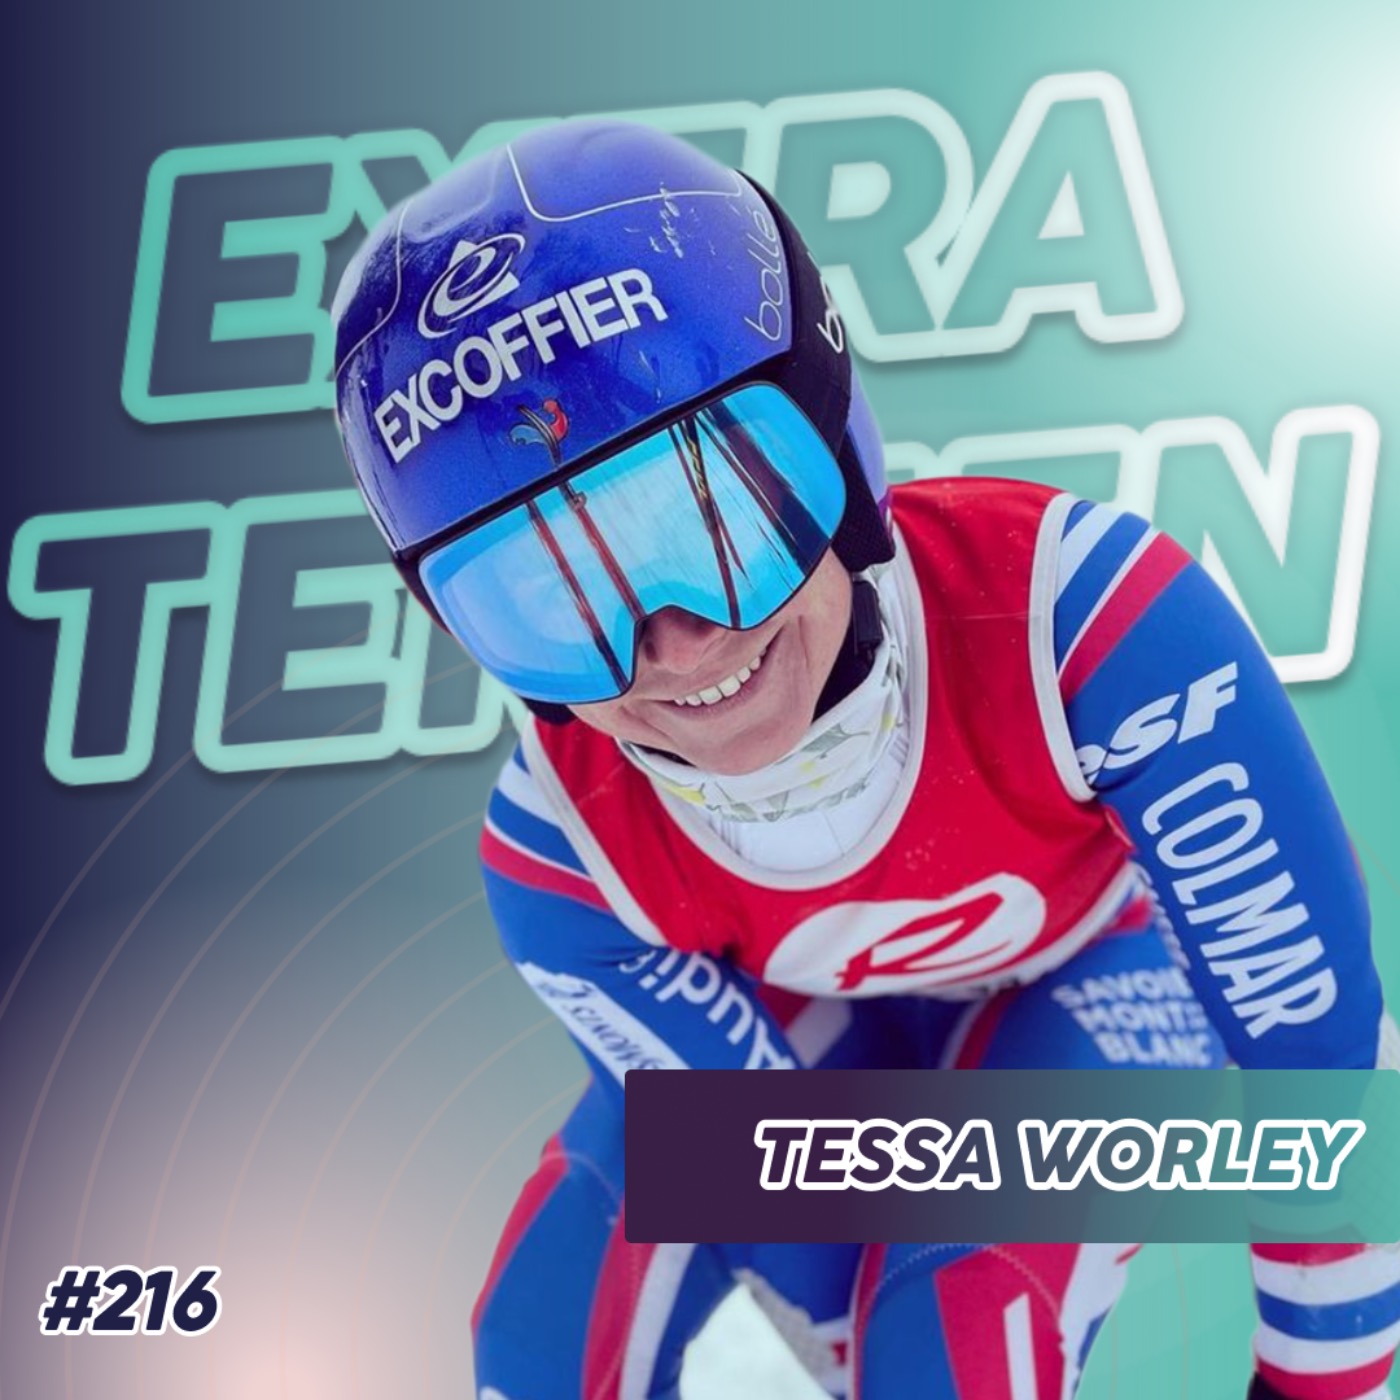 Tessa Worley - Retour sur la géante carrière de la skieuse